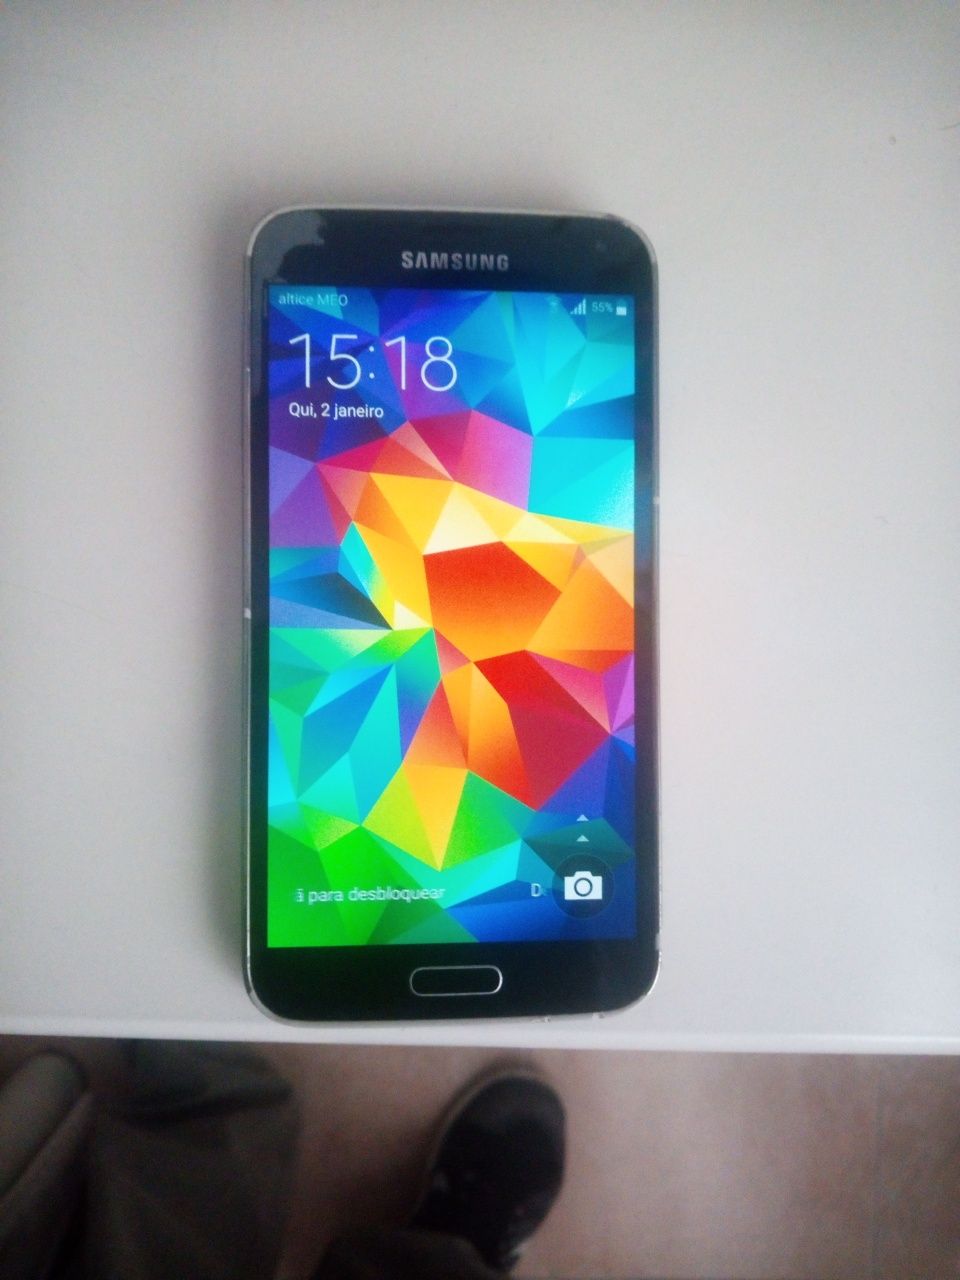 Samsung Galaxy S5 original, azul ou branco, desbloqueado de fábrica